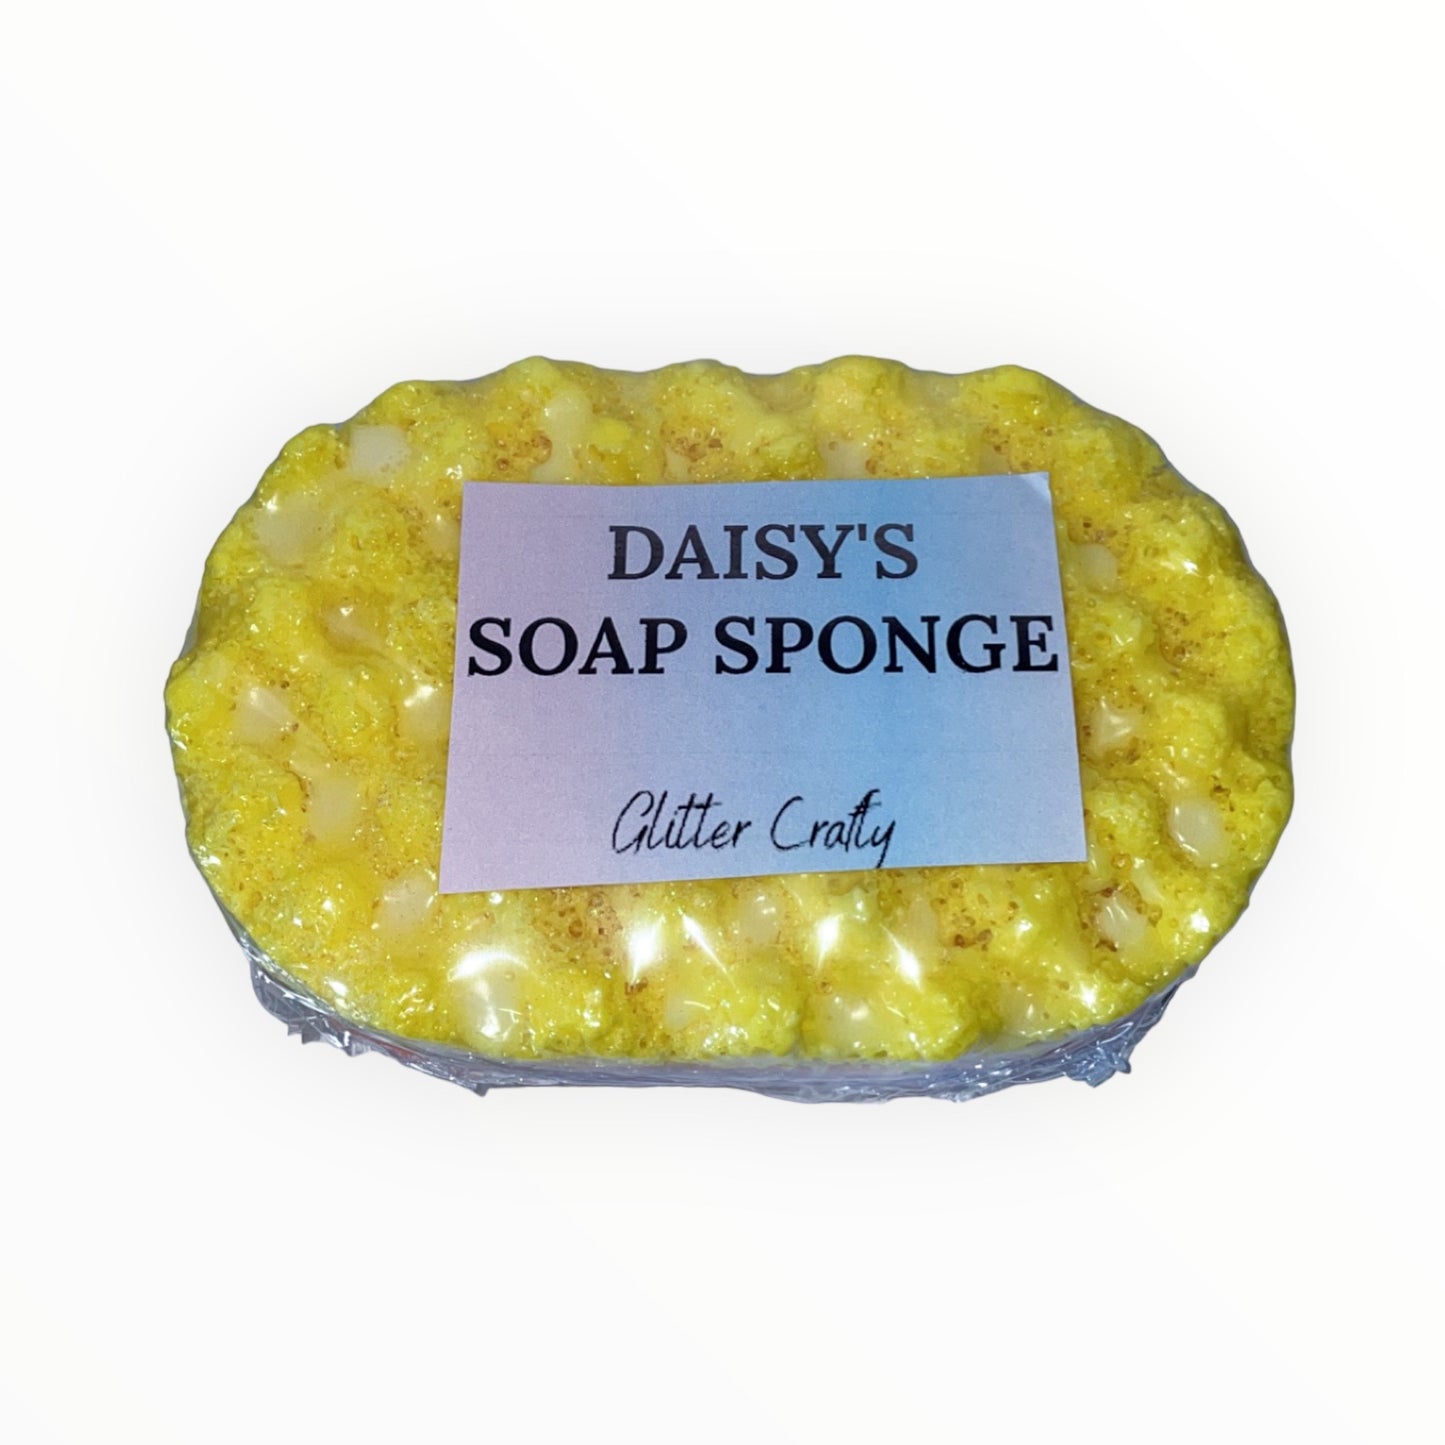 soap sponges